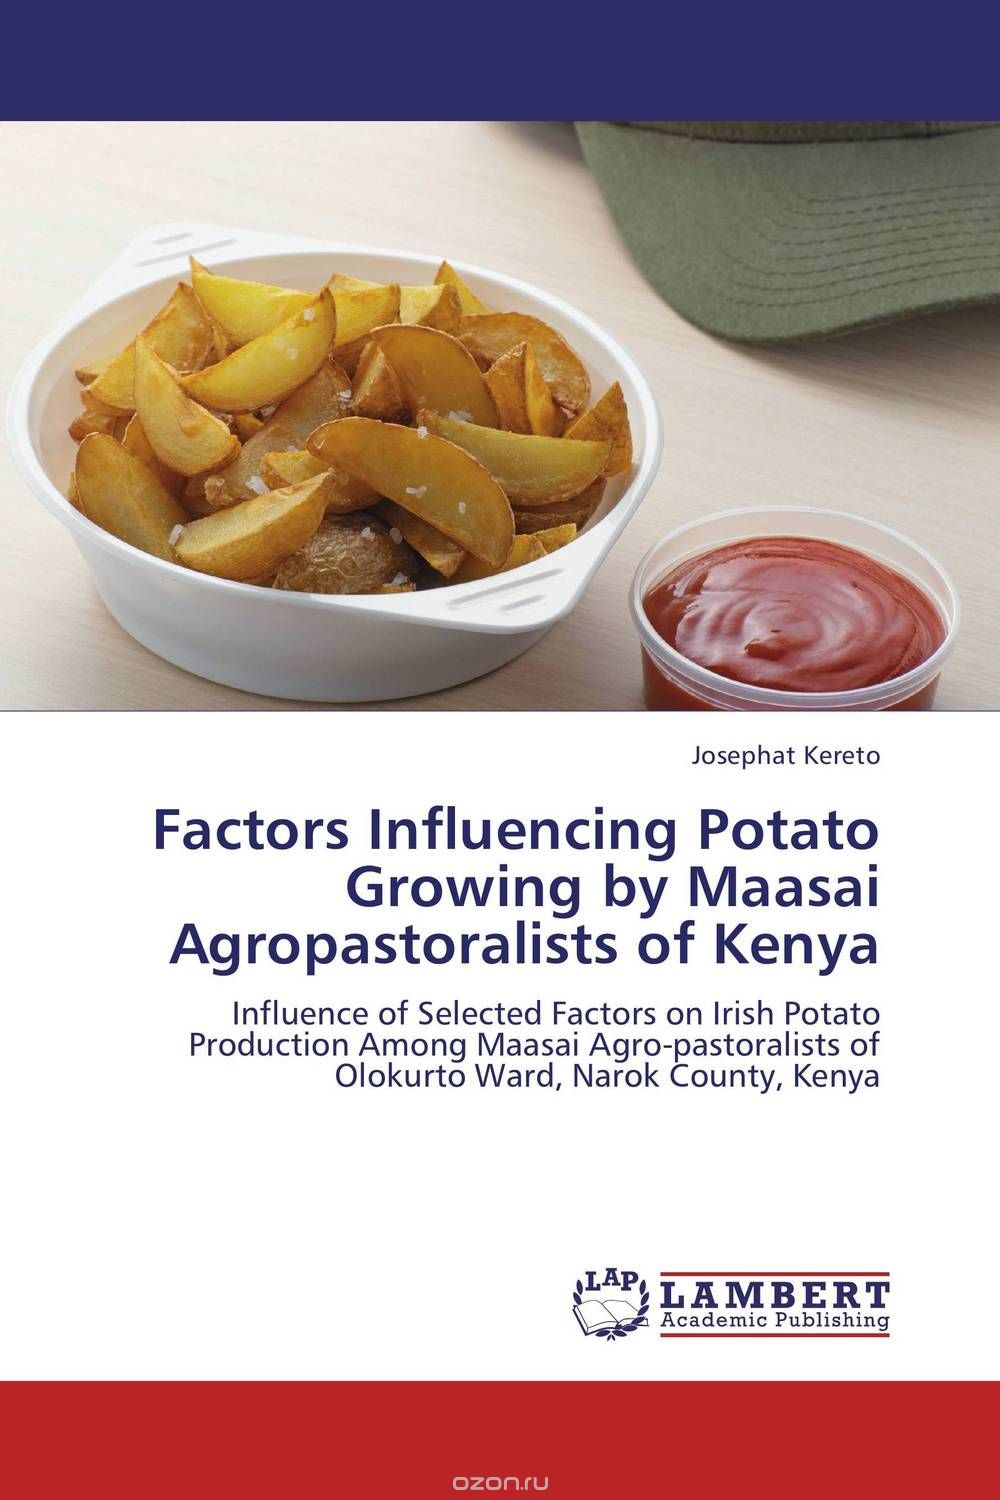 Скачать книгу "Factors Influencing Potato Growing by Maasai Agropastoralists of Kenya"